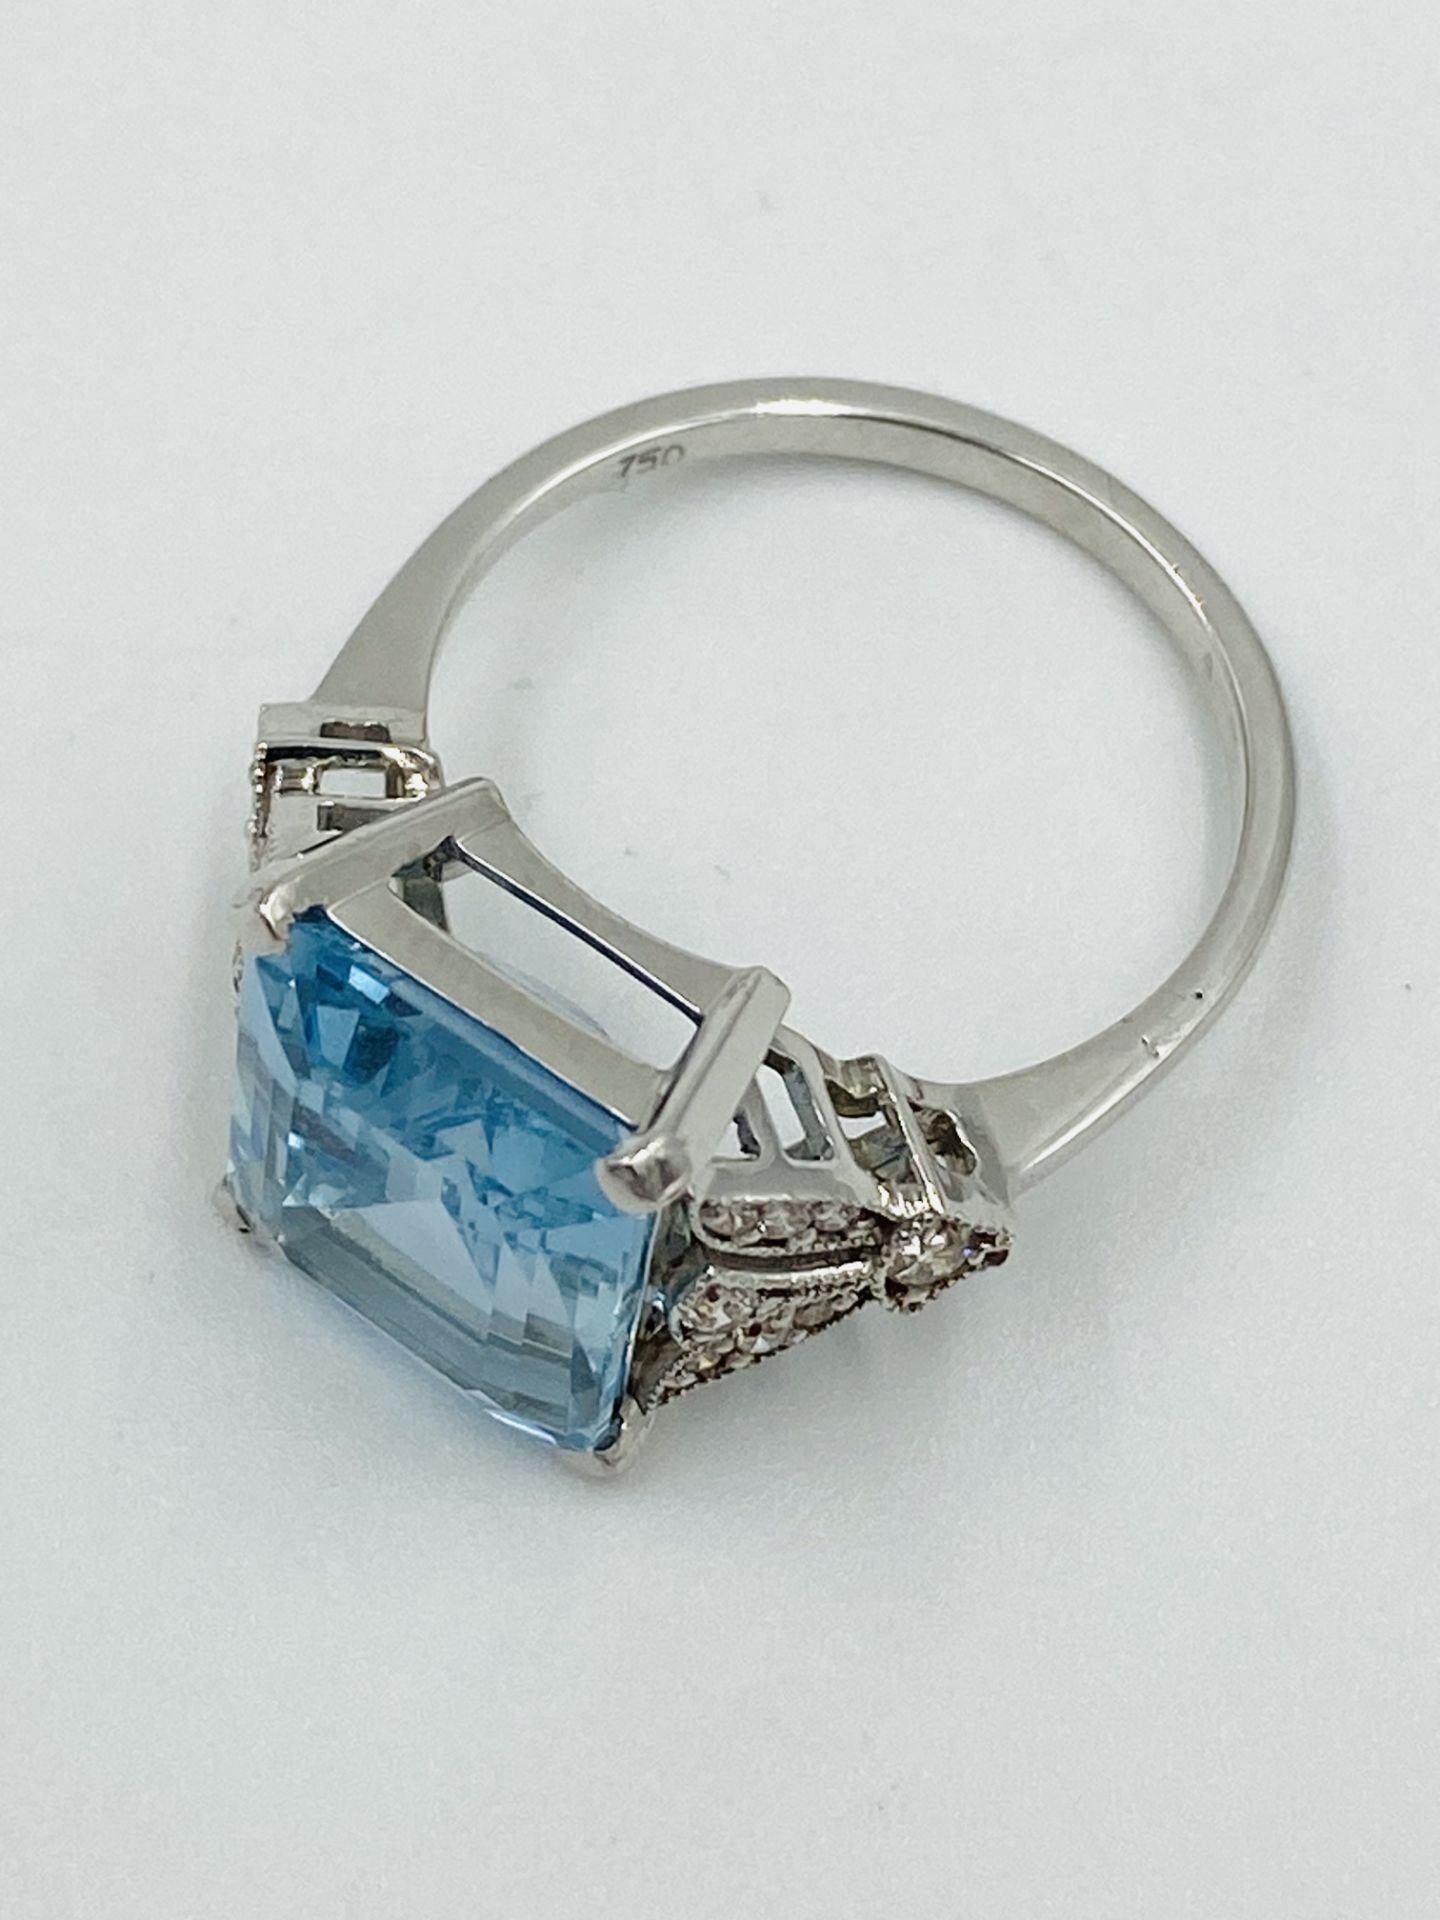 18ct white gold, aquamarine and diamond ring - Image 4 of 5